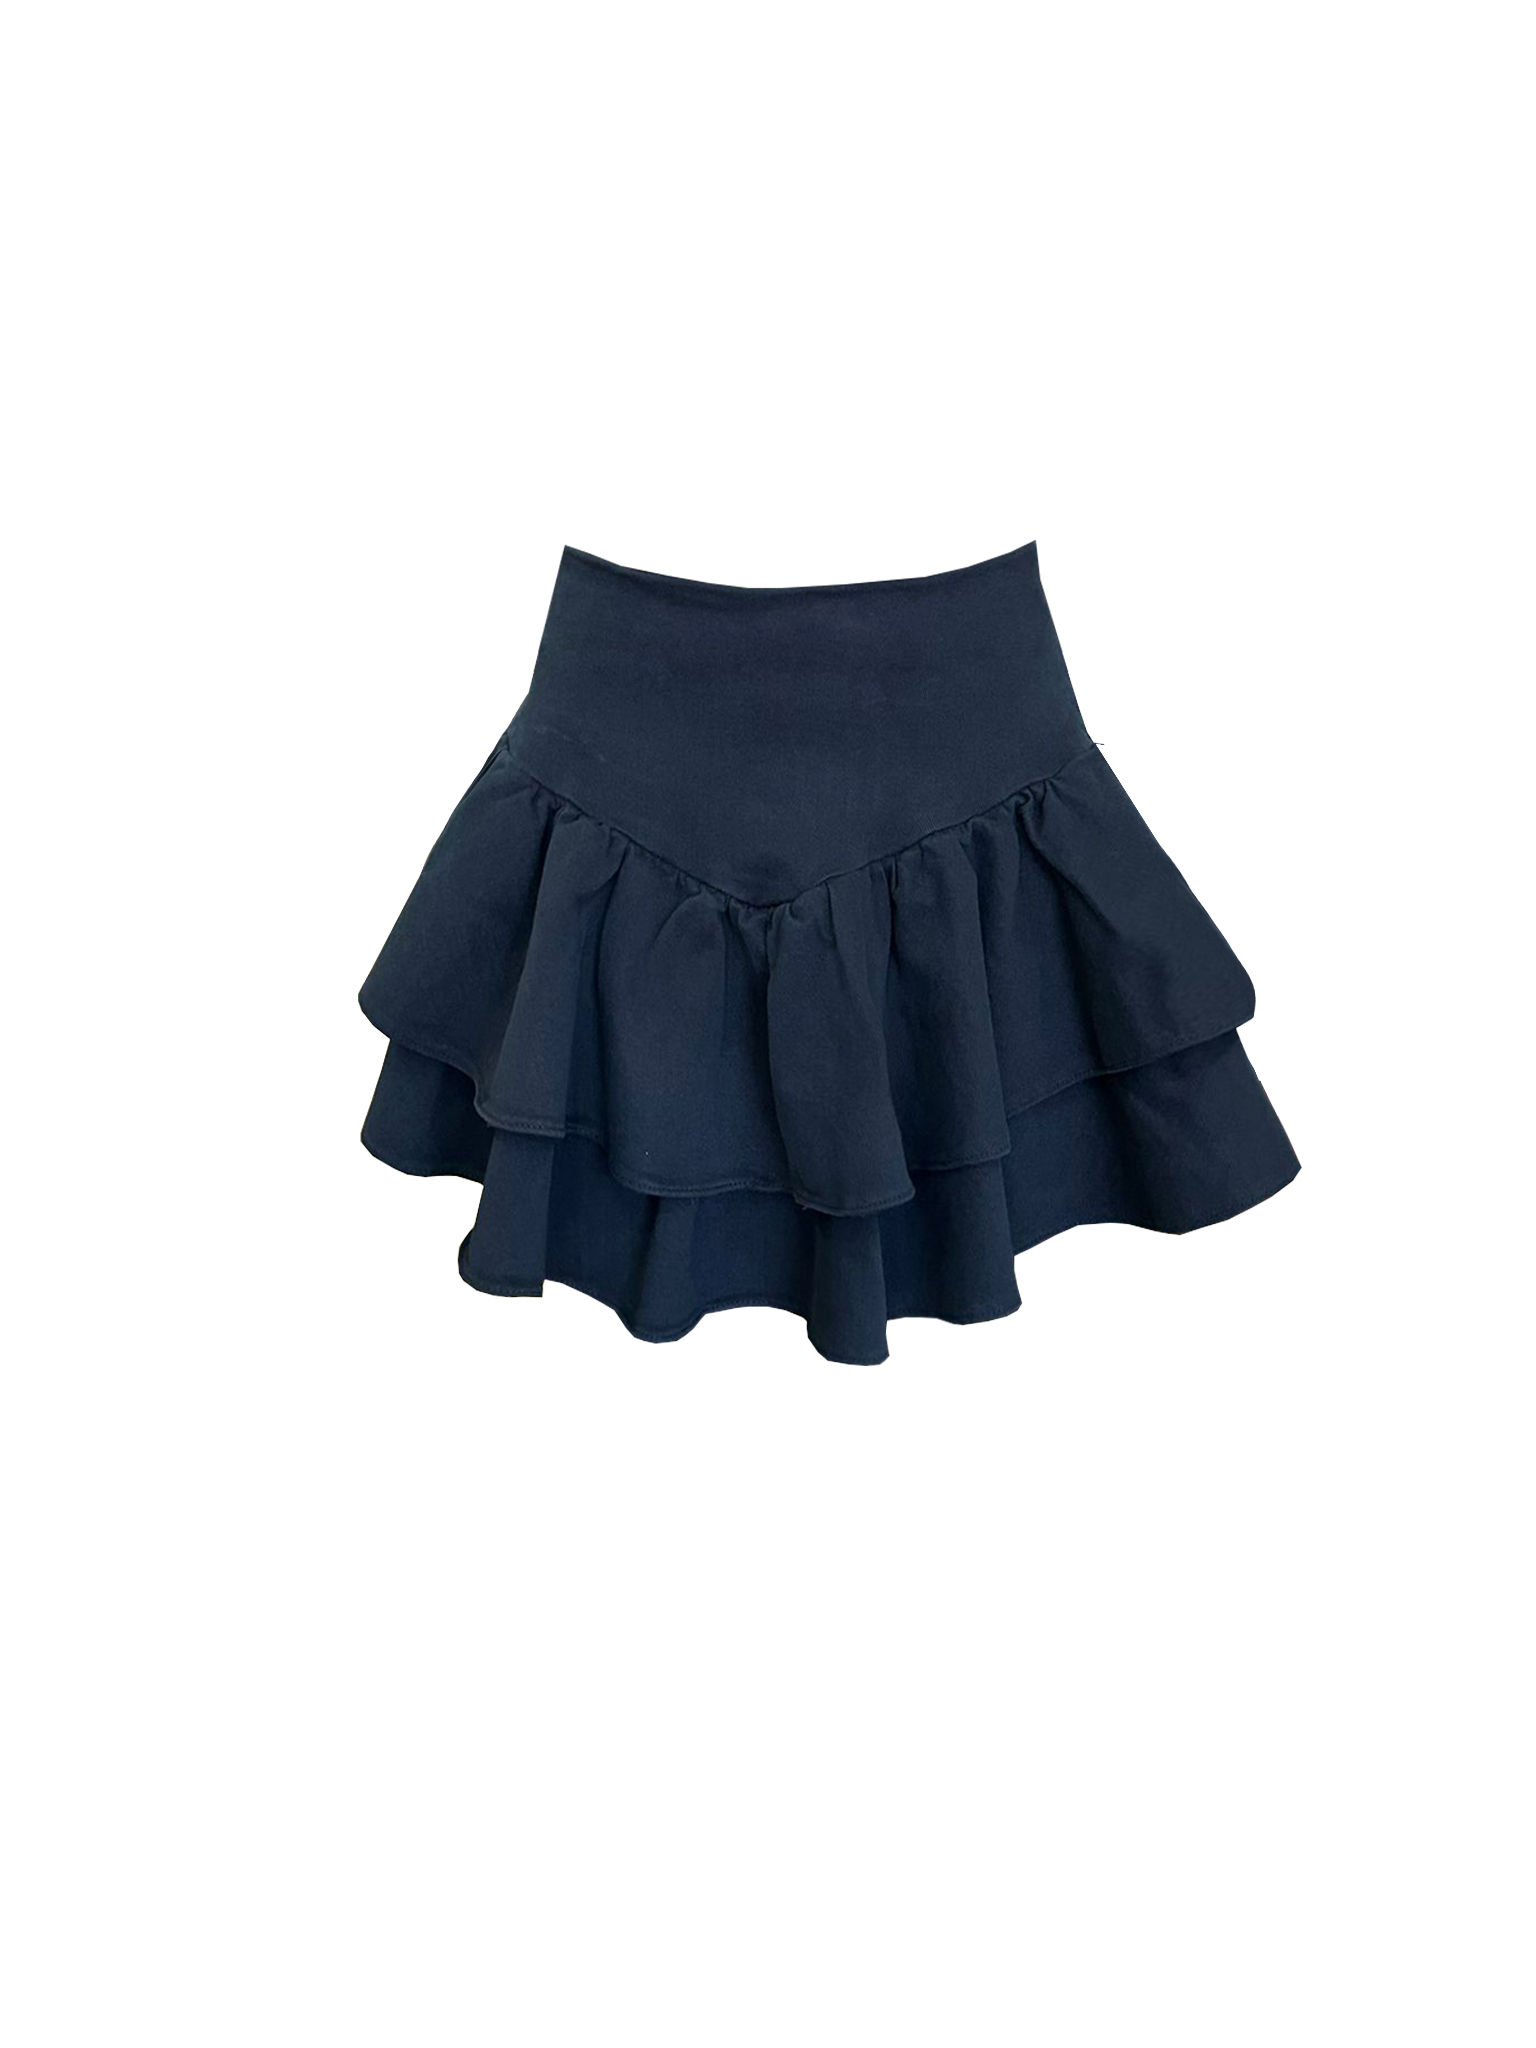 RG-400 Ruffled mini denim navy blue skirt